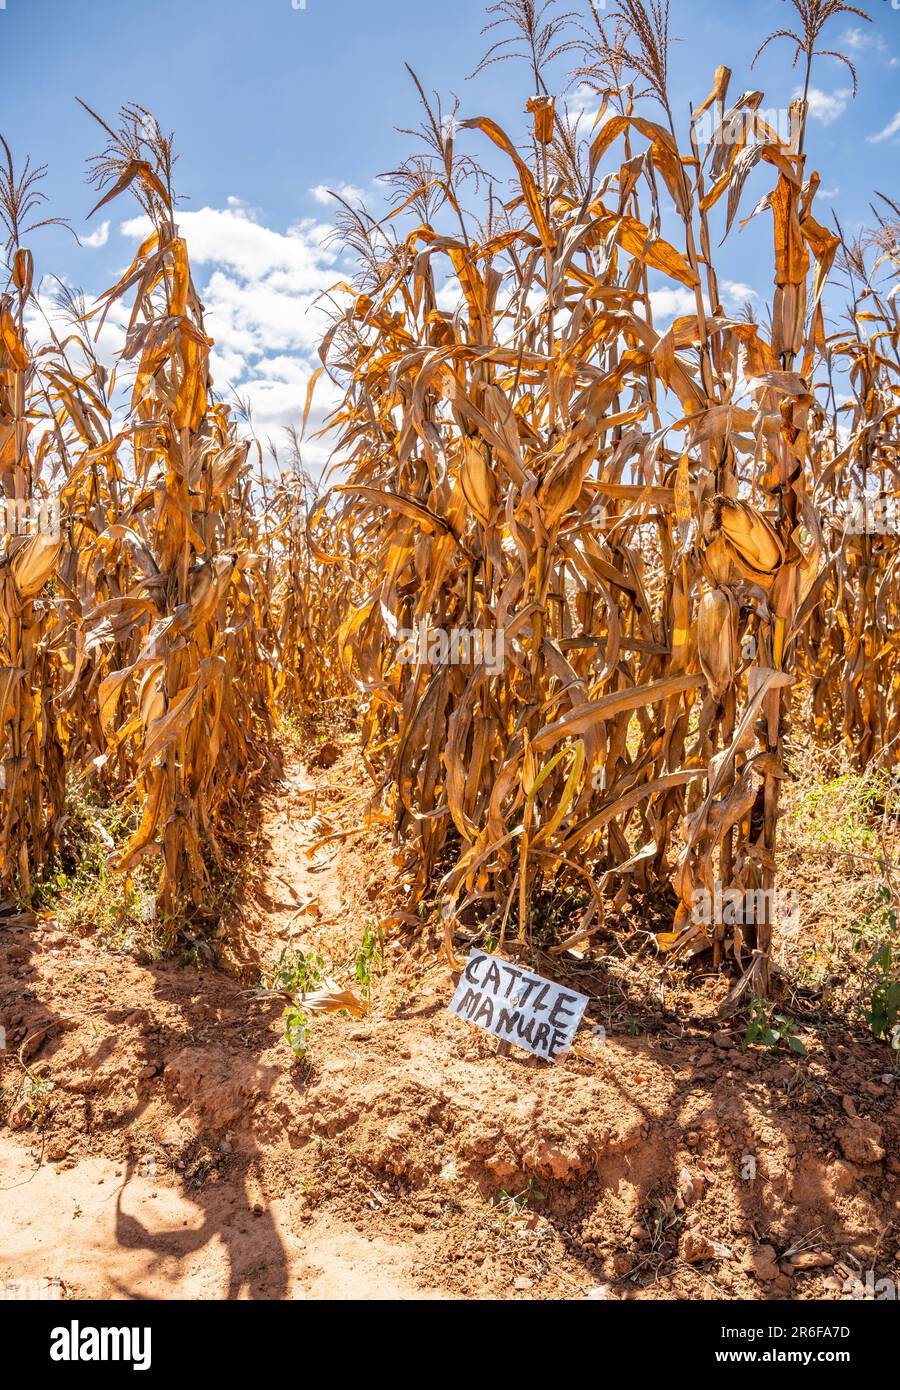 Parcelle de maïs (après récolte) au Malawi avec un signe indiquant le traitement avec du fumier de bétail. Banque D'Images